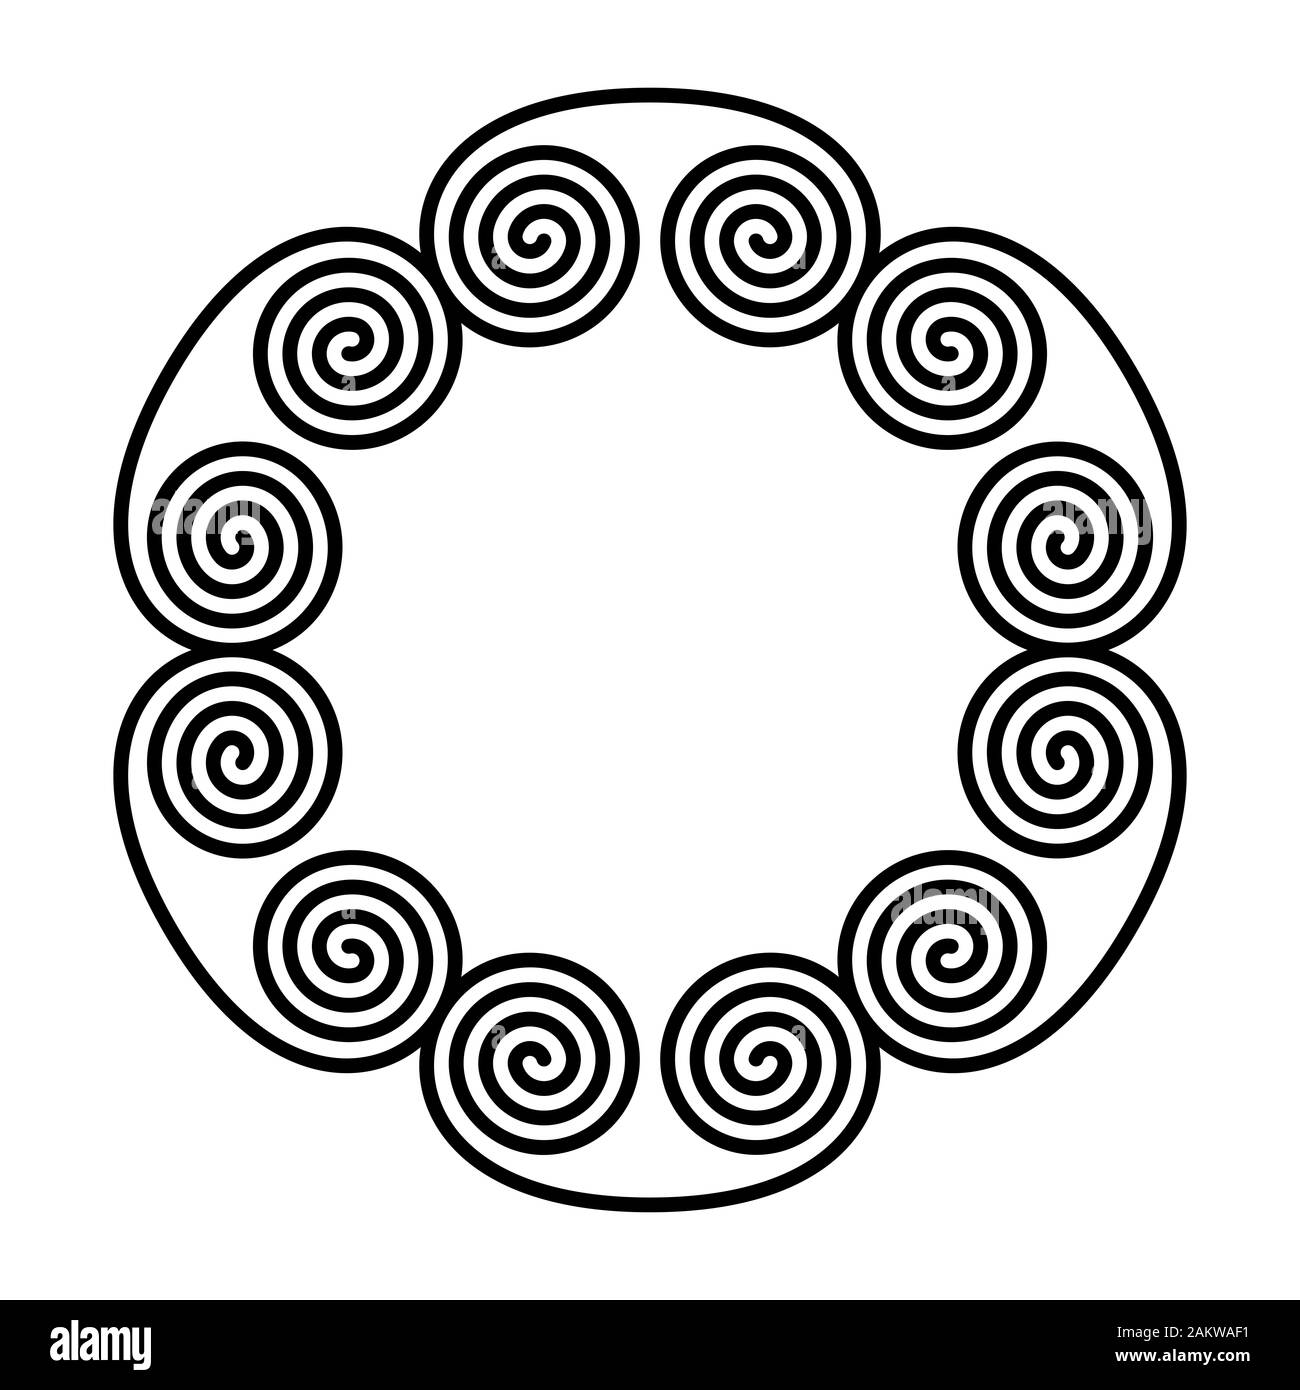 Doppelte Spirale Ornament, die einen Kreis bilden. Sechs linearen doppelte Spiralen Aufbau einer dekorativen Muster und Muster aus wiederholten Linien gebaut. Stockfoto